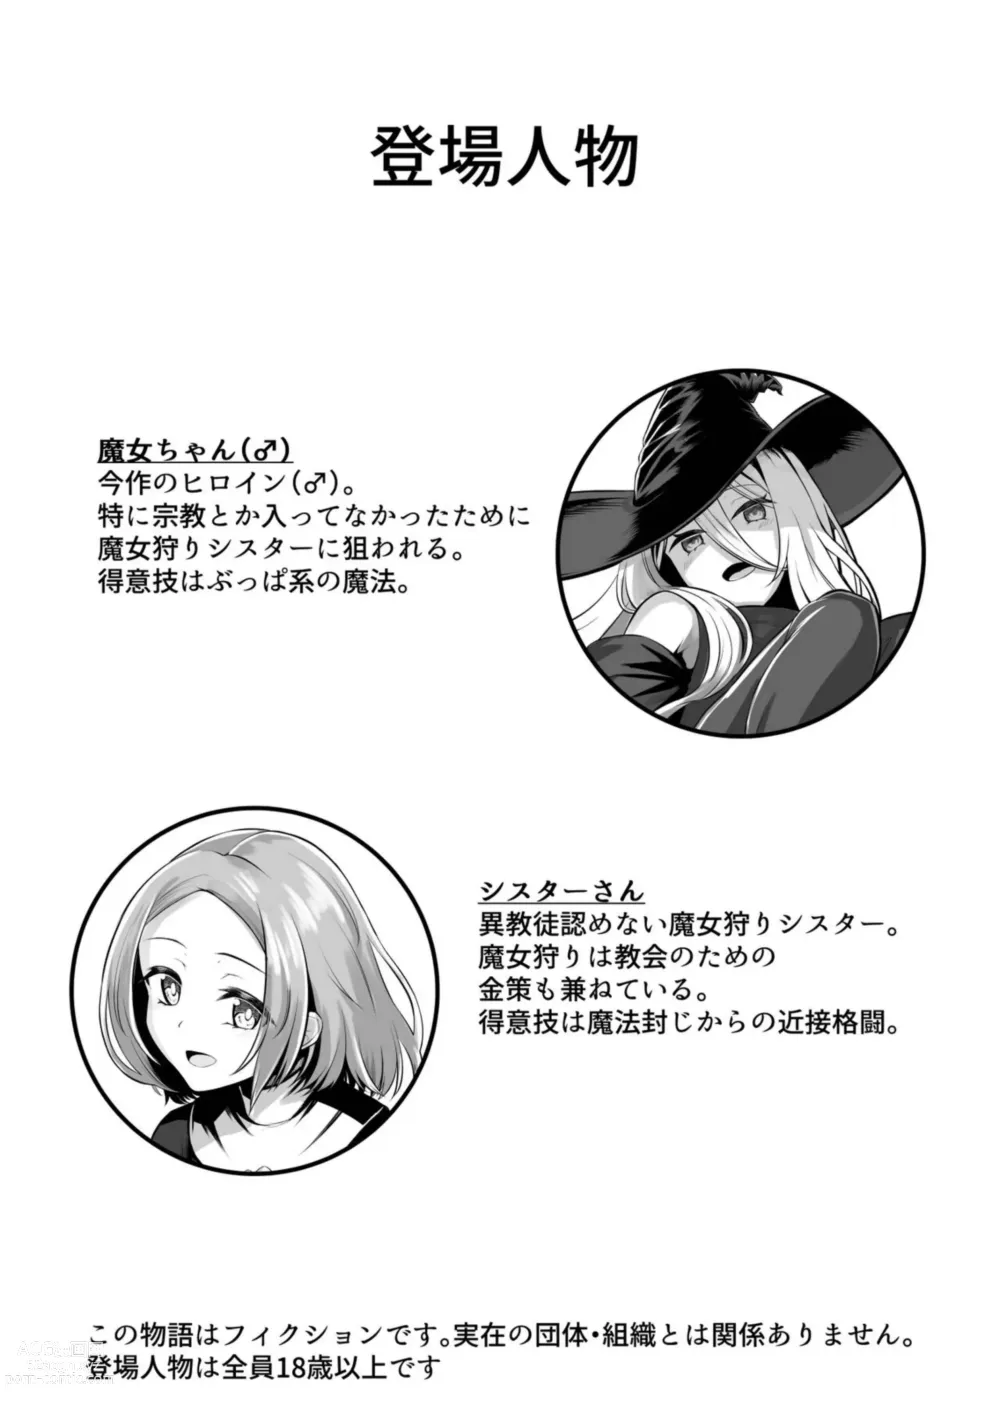 Page 4 of doujinshi Majo (♂) Gari